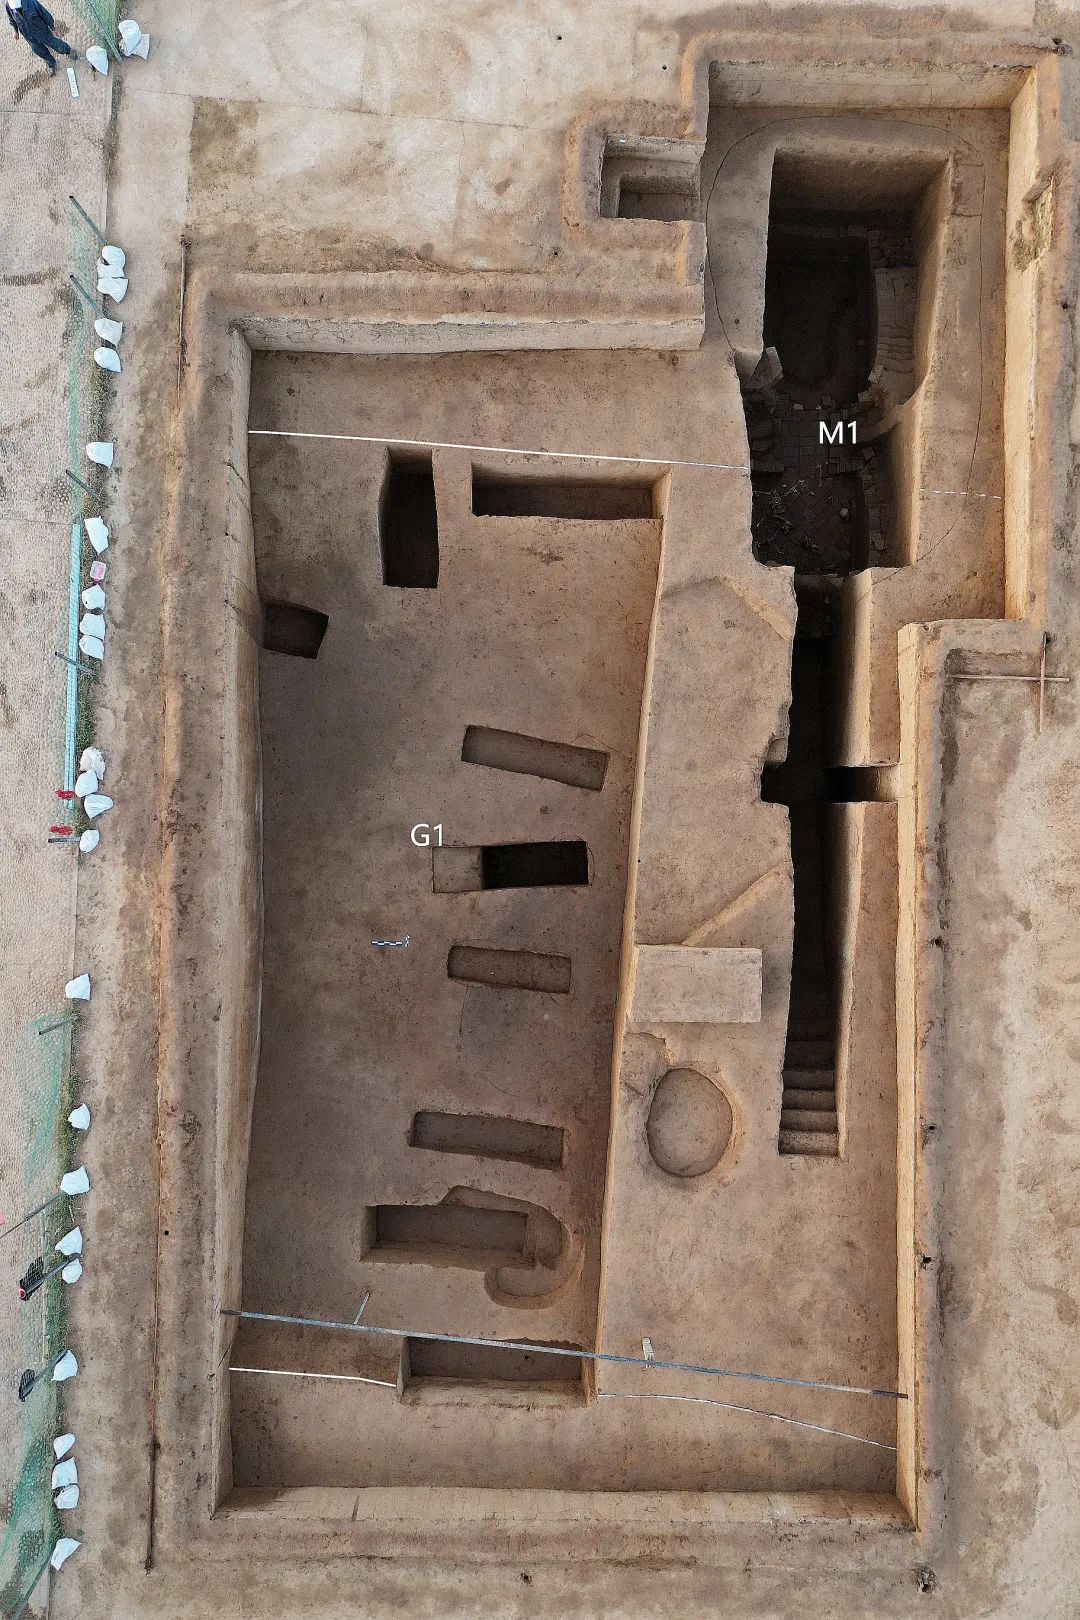 东围沟G1南段第二地点探方 东部为打破围沟的东汉晚期砖室墓M1